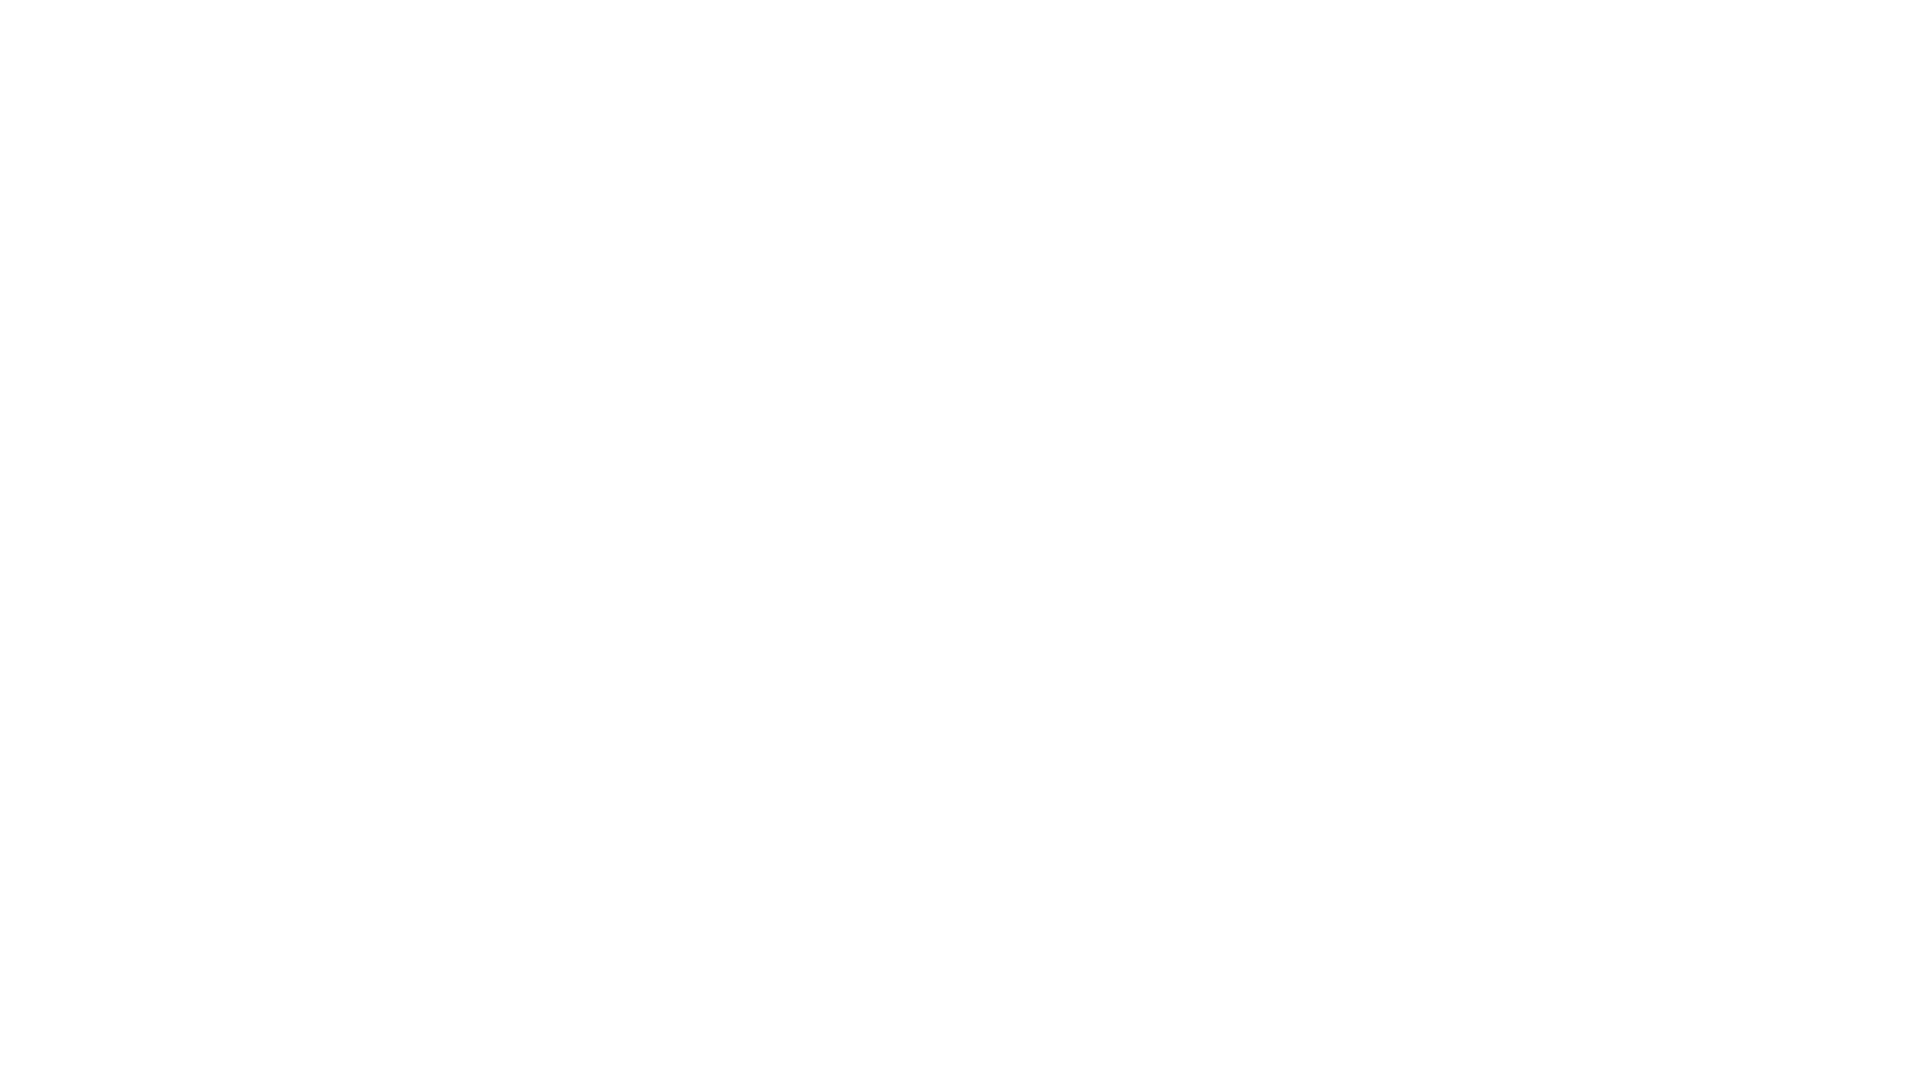 APOS - Odlewnia cynku Odlewnia aluminium Narzędziownia obróbka CNC Pomiary skanerem 3D